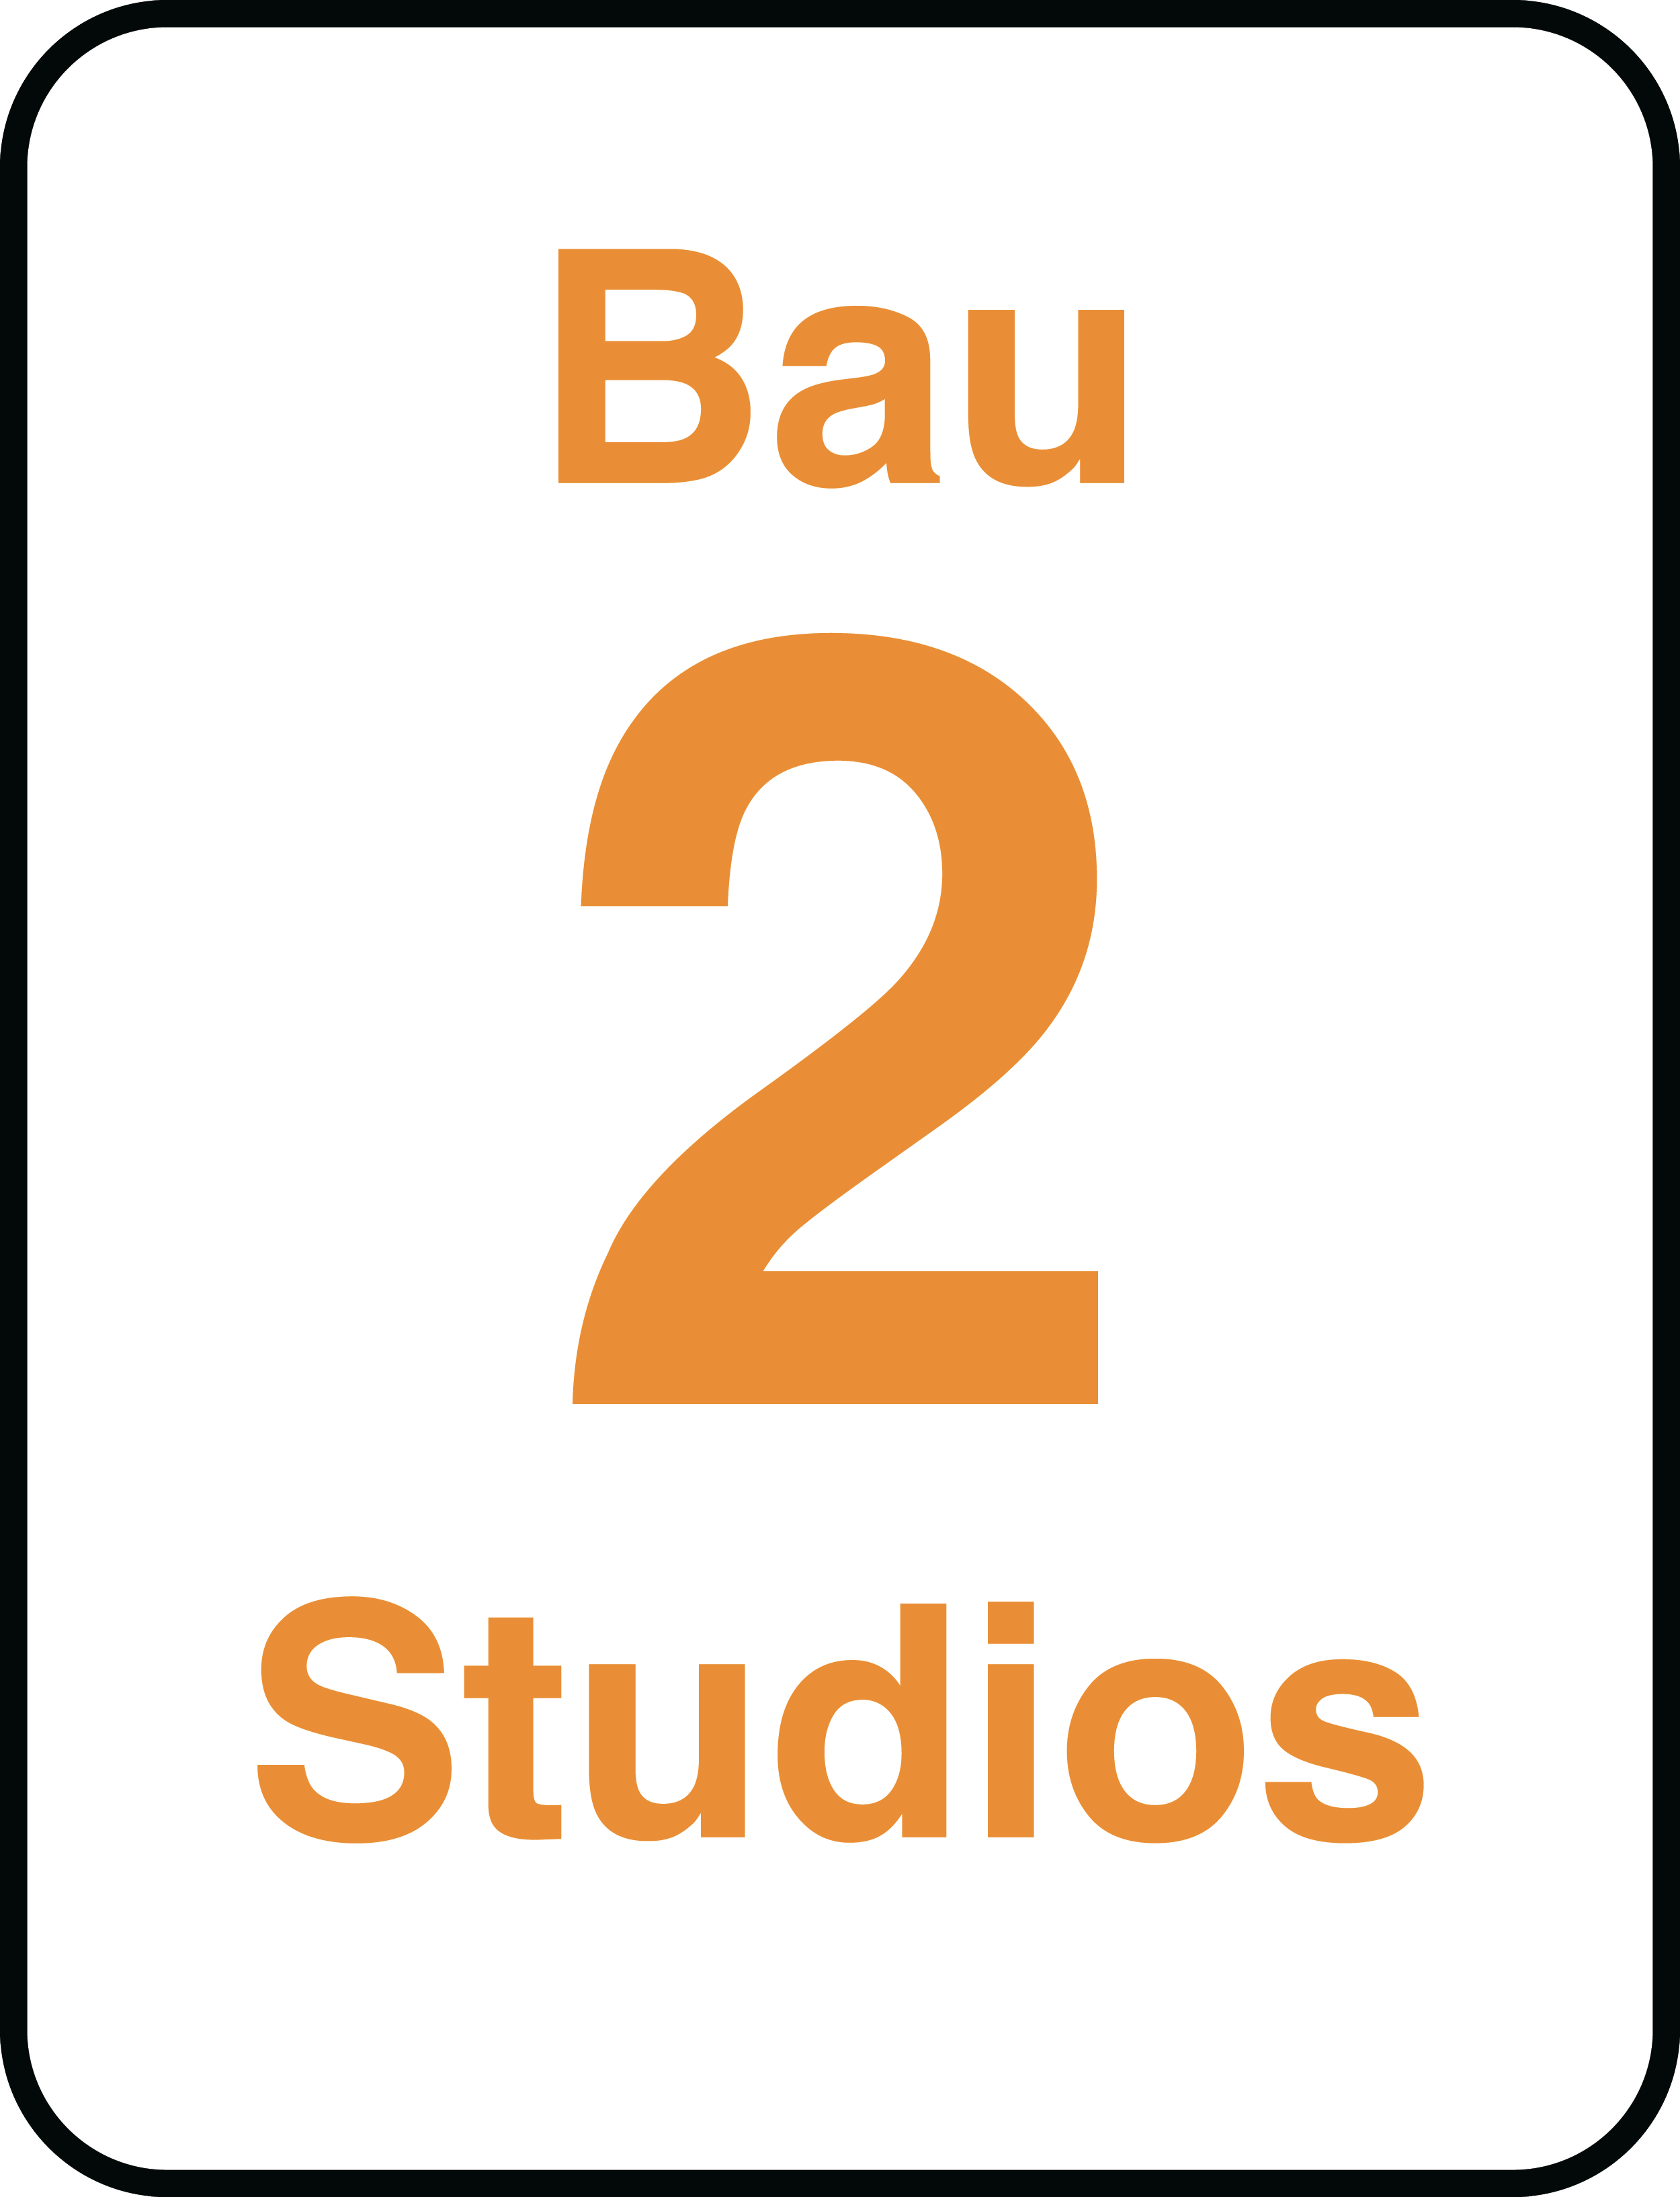 Bau 2 Studios